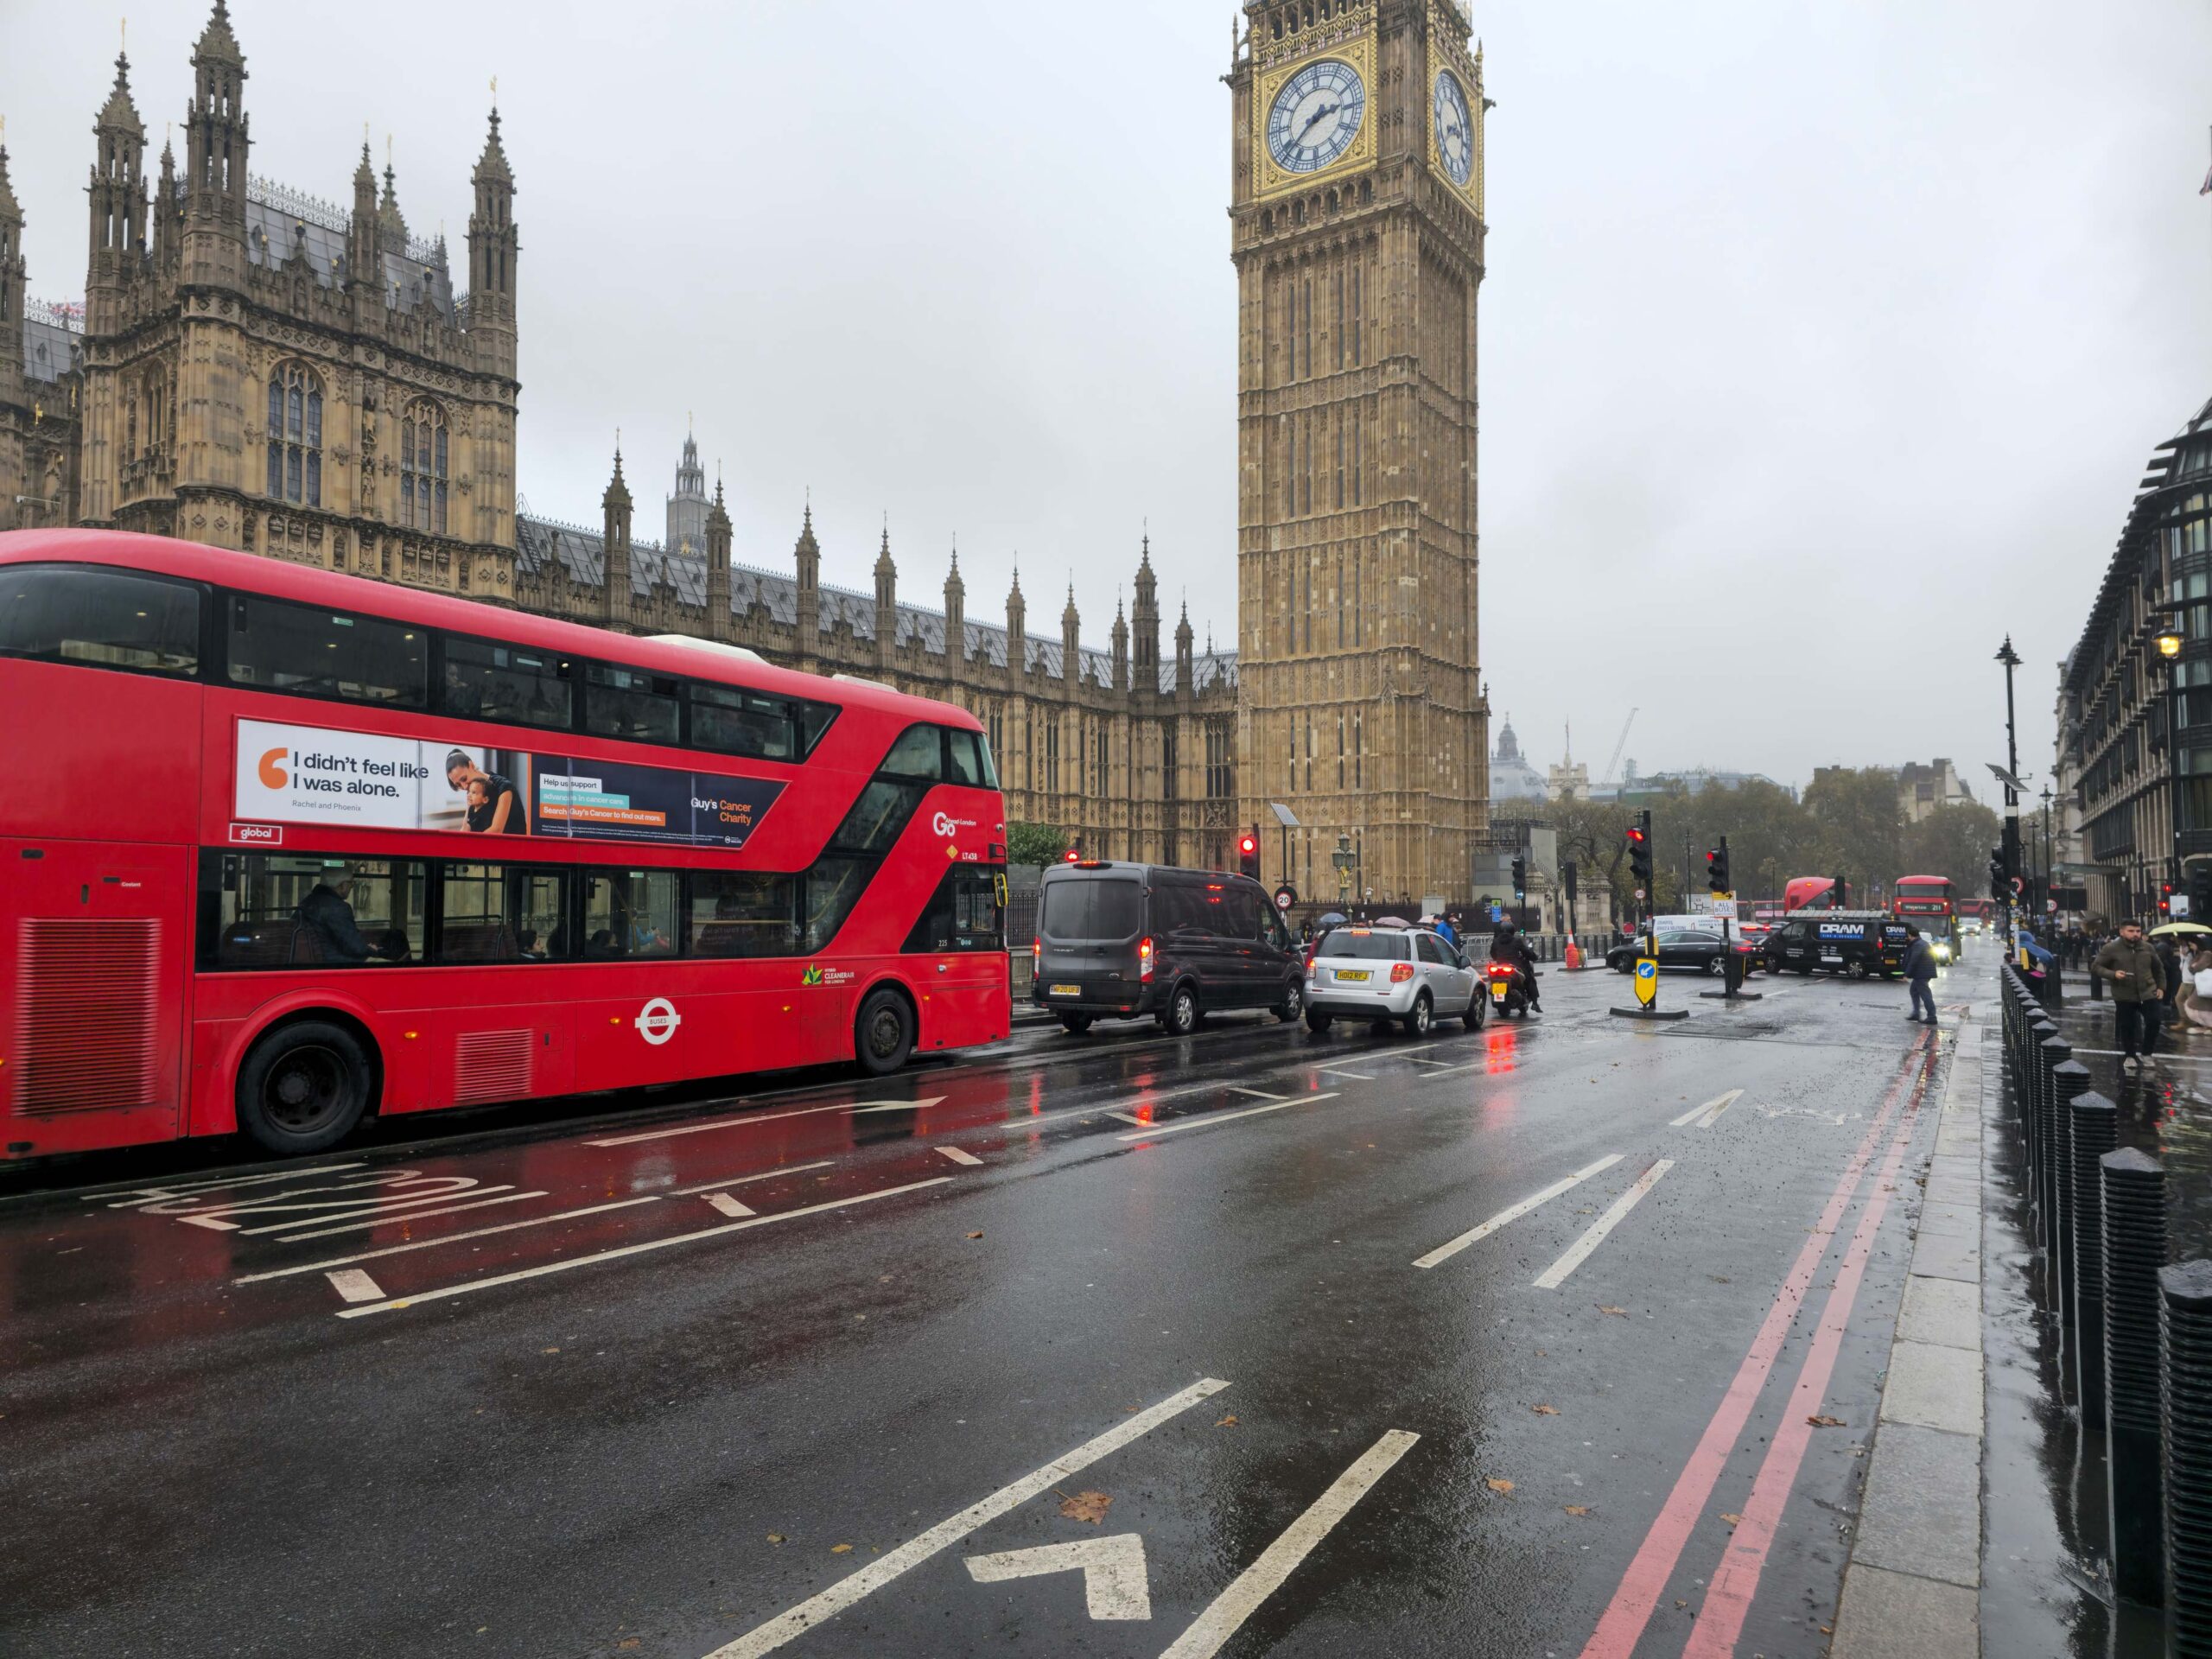 London bus In front of Big Ben